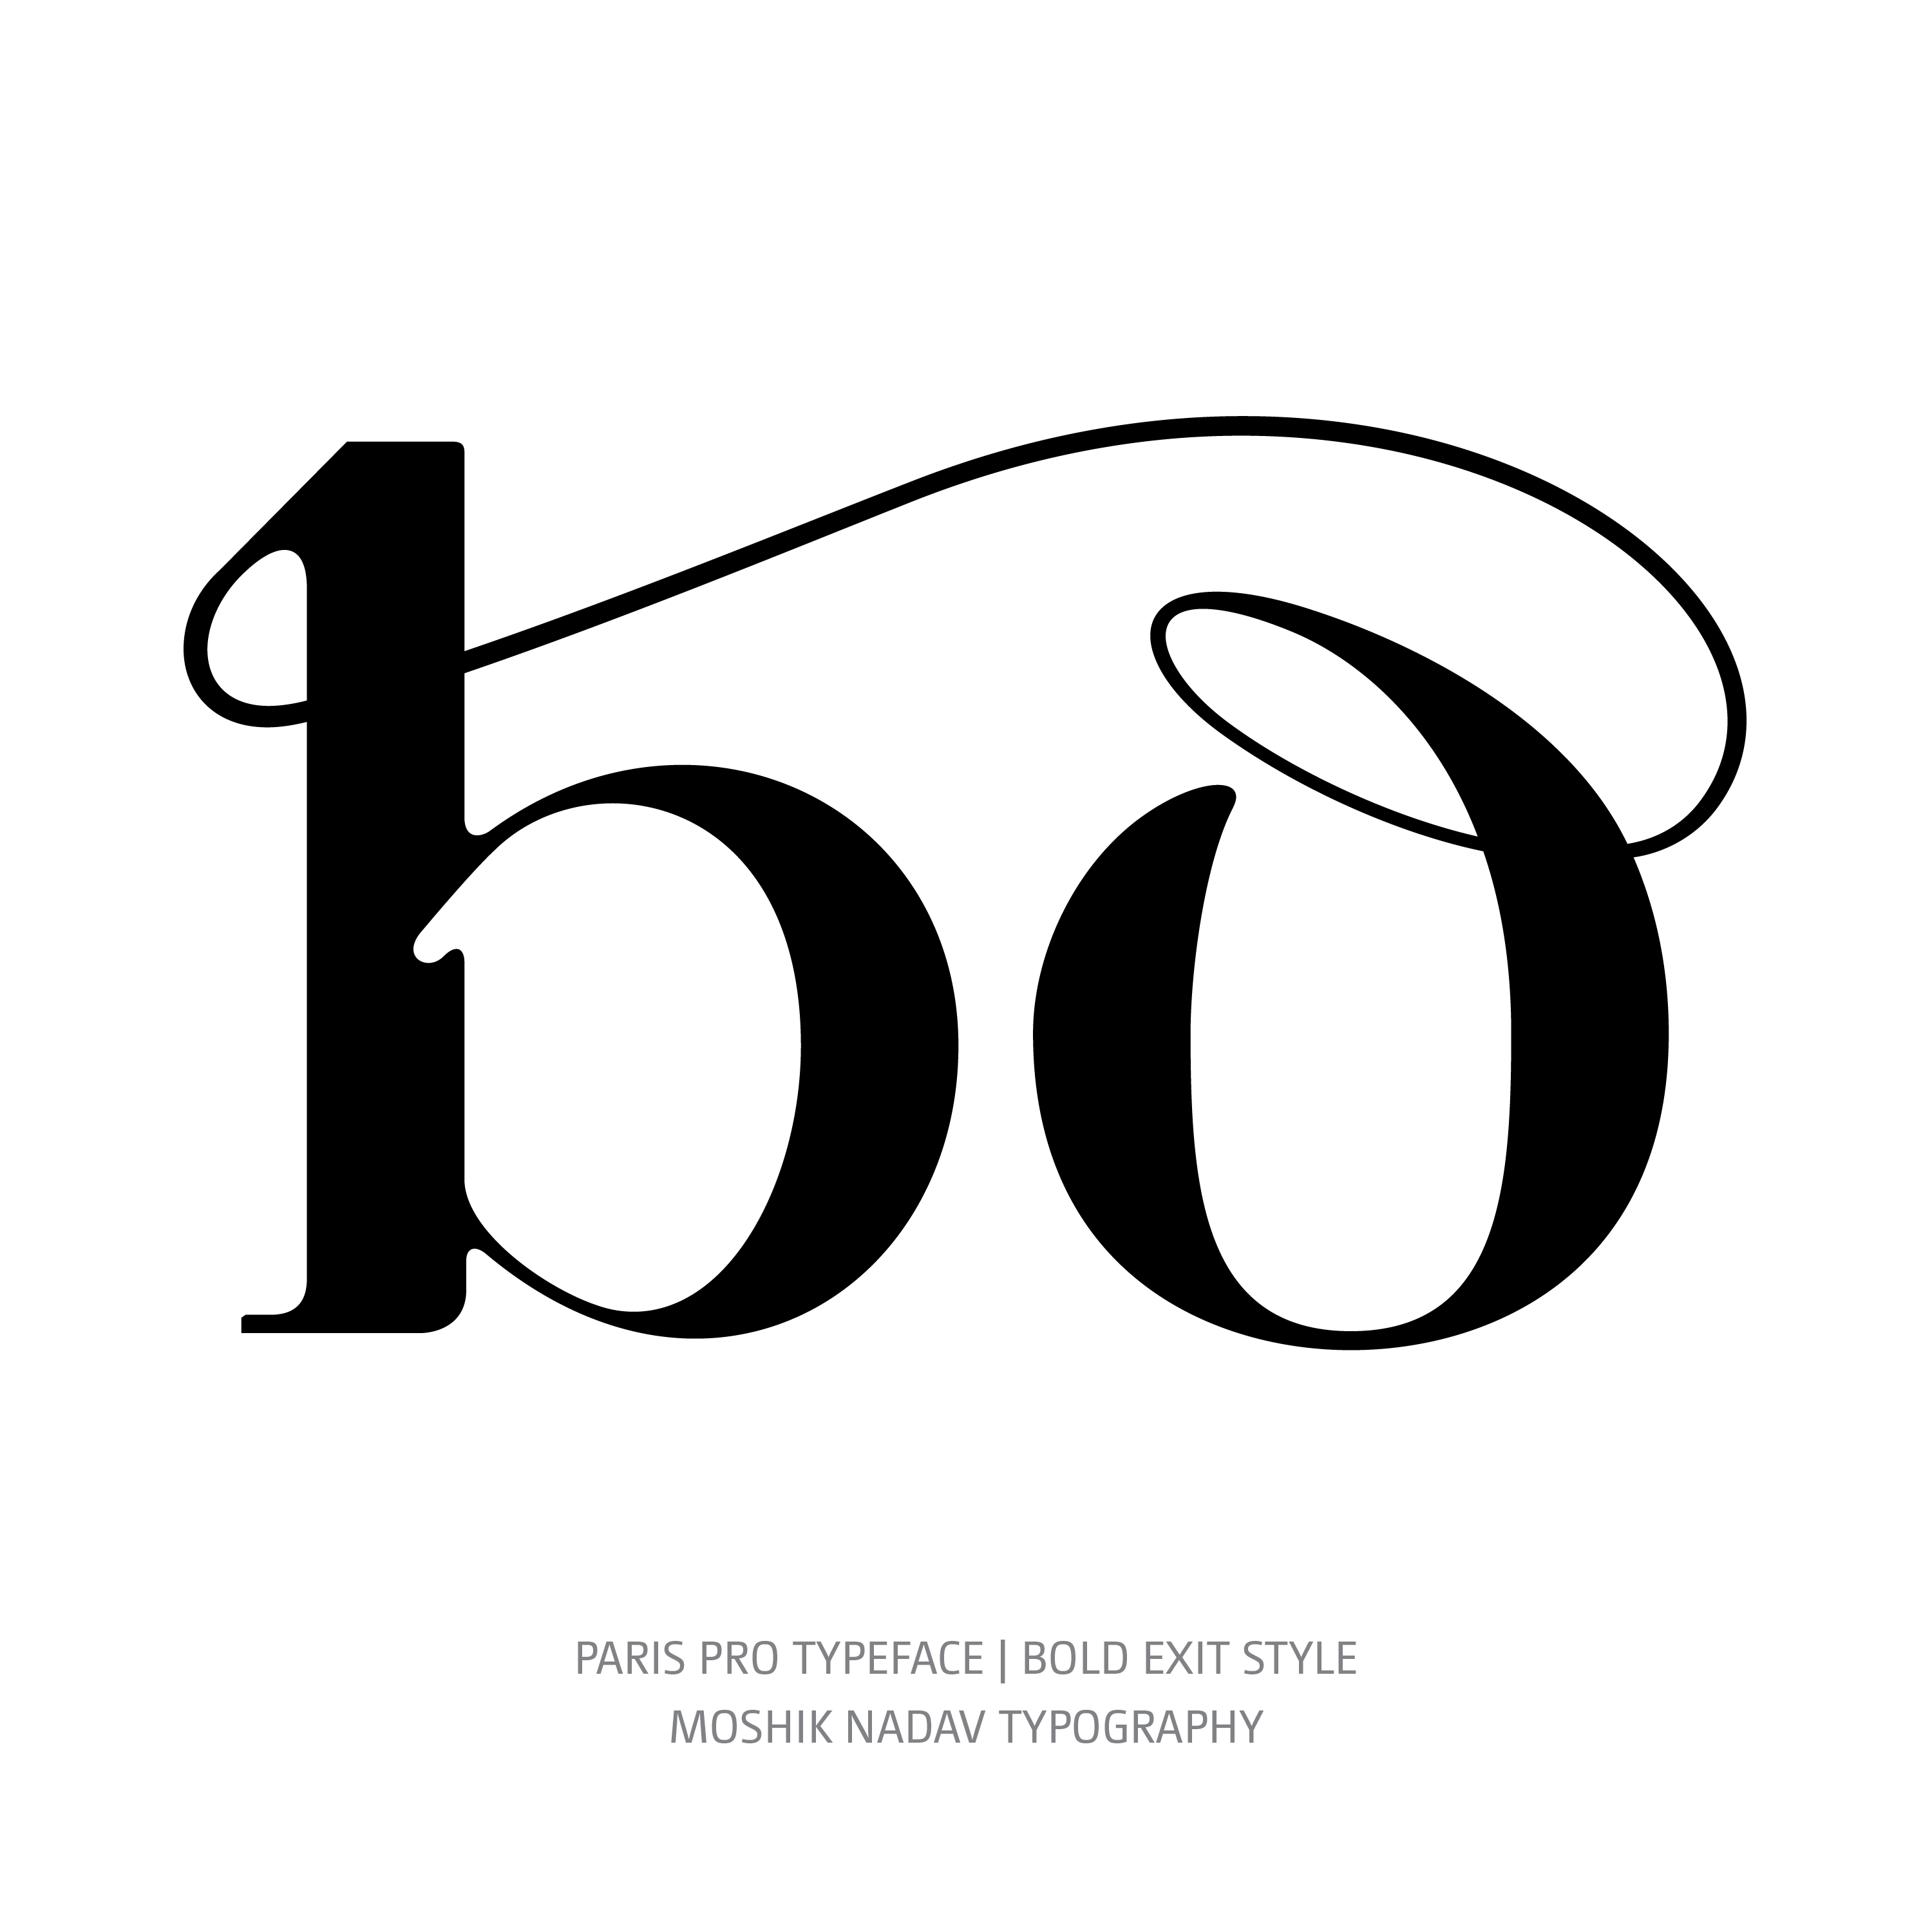 Paris Pro Typeface Bold Exit bo ligature